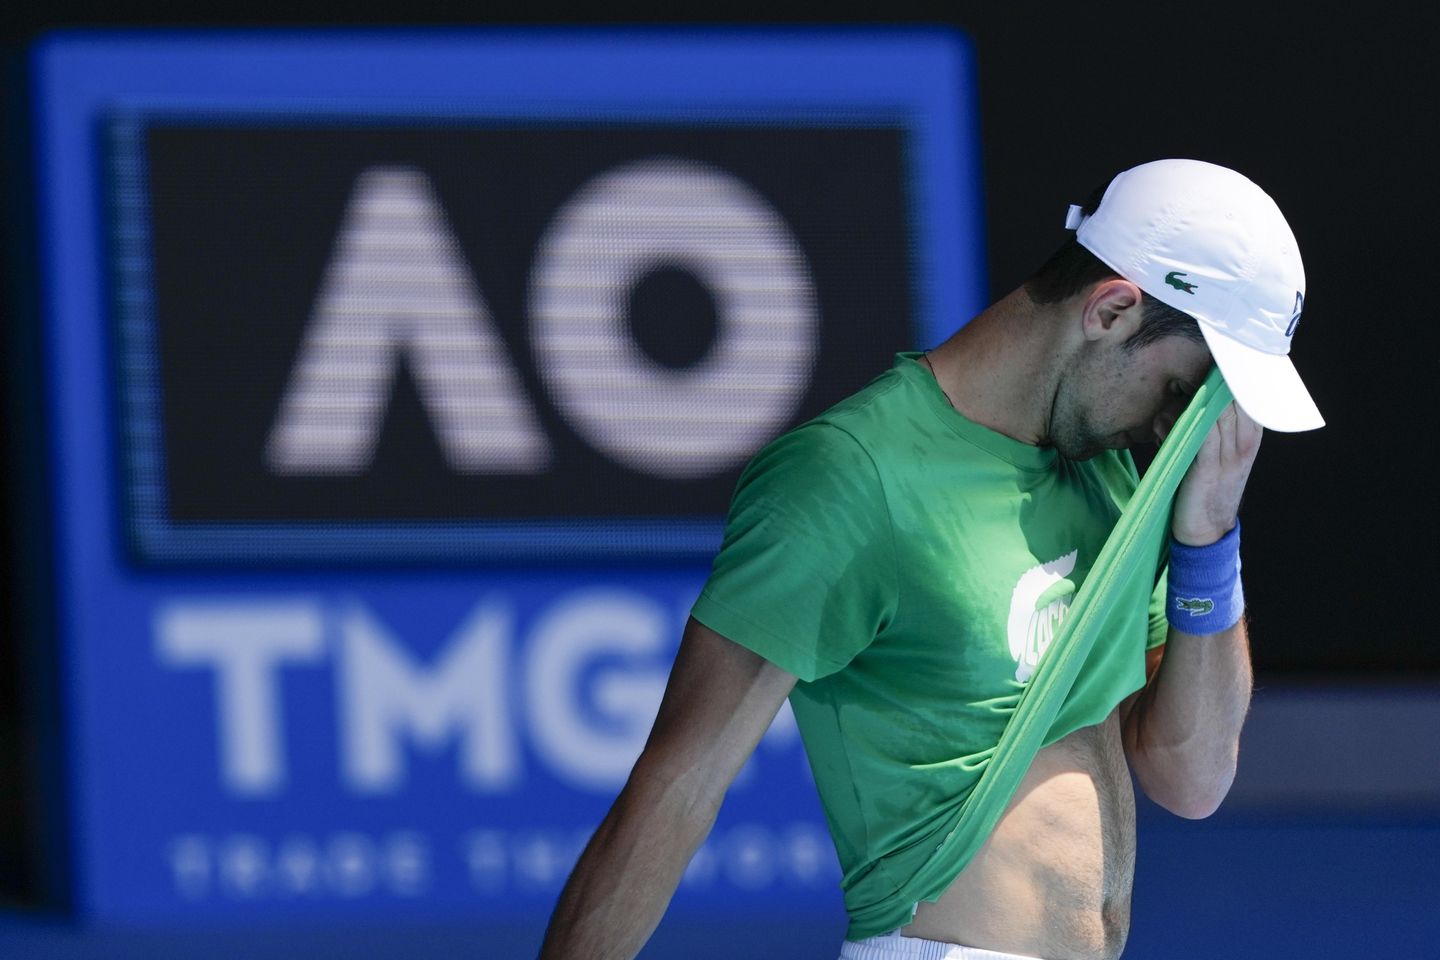 Doble falta: visa revocada nuevamente, Djokovic enfrenta deportación